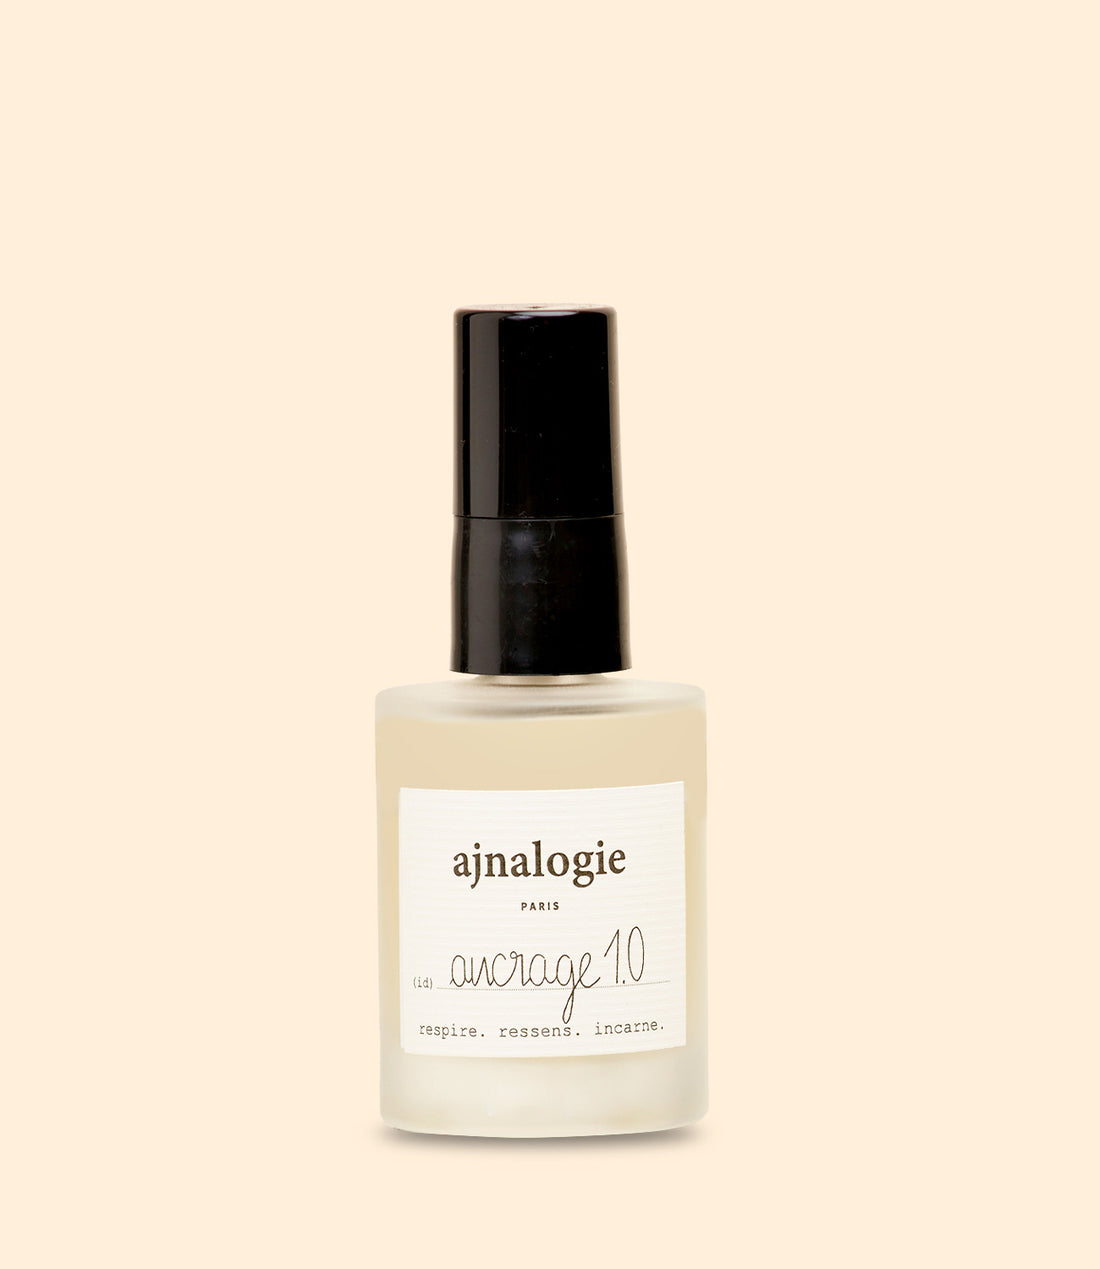 parfum ancrage 1.0 30ml par Ajnalogie 